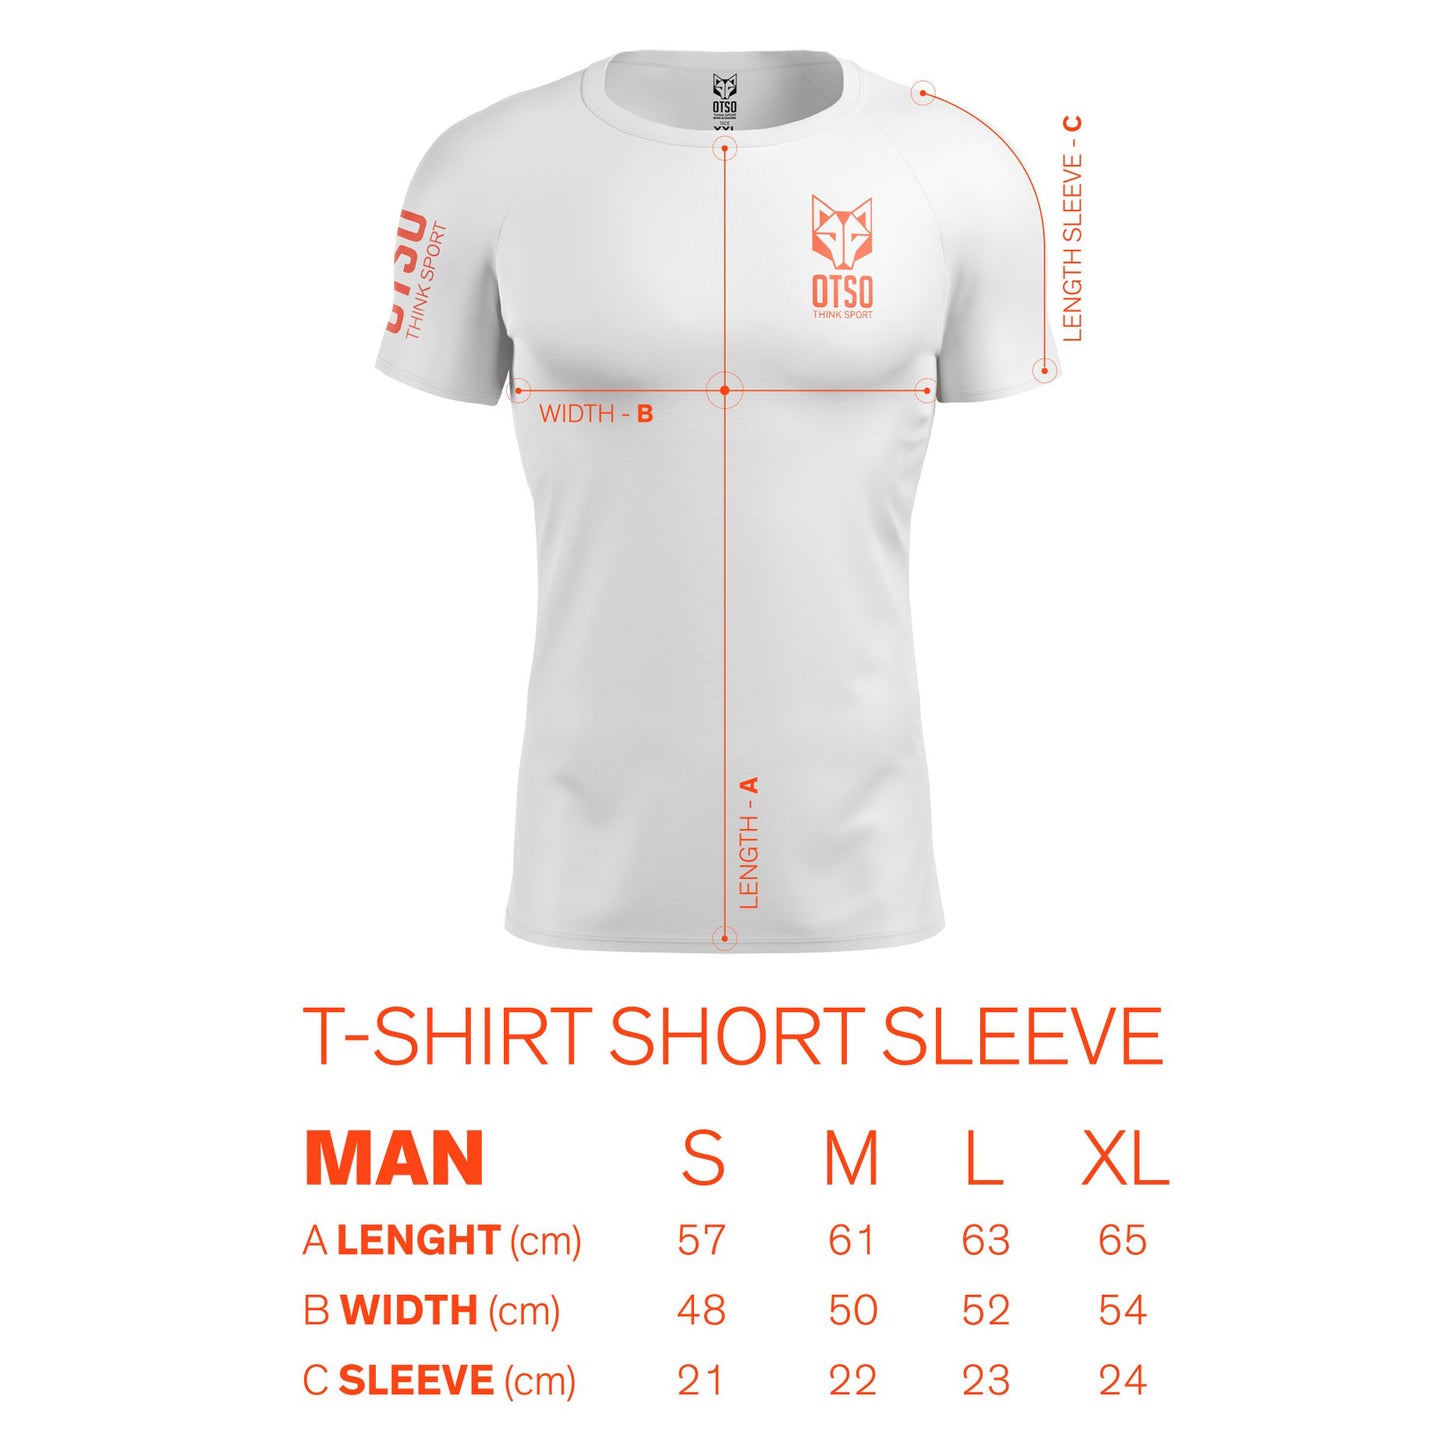 Camiseta masculina de manga curta - Iten